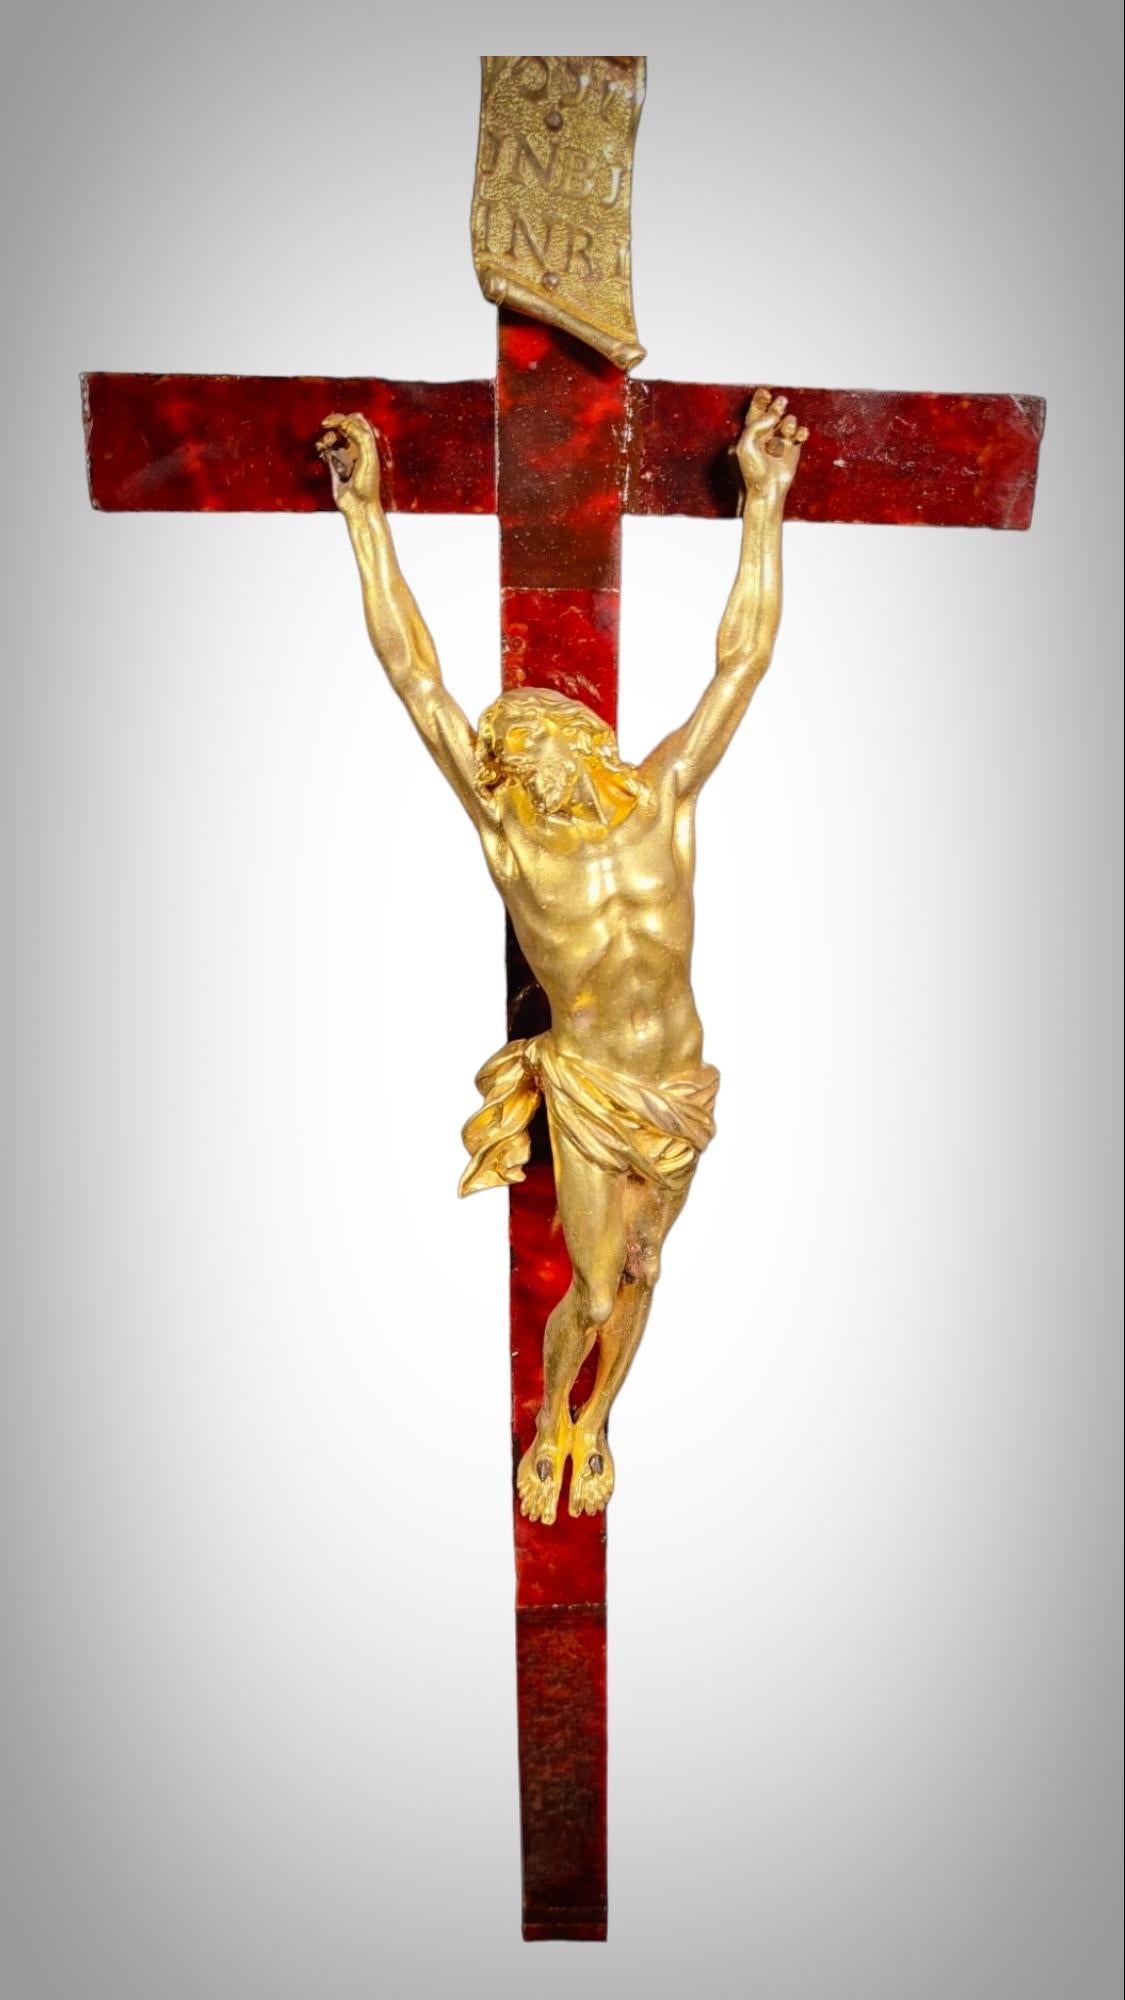 Großes Kreuz mit Christus aus vergoldeter Bronze aus dem 17. Jahrhundert
WICHTIGES CHRISTUSKREUZ aus dem 17. Jh. in fein ziselierter Goldbronze aus der französischen Schule des 17. Jh. Das Kreuz misst 50 x 20 cm und der Christus 25 x 7 cm.